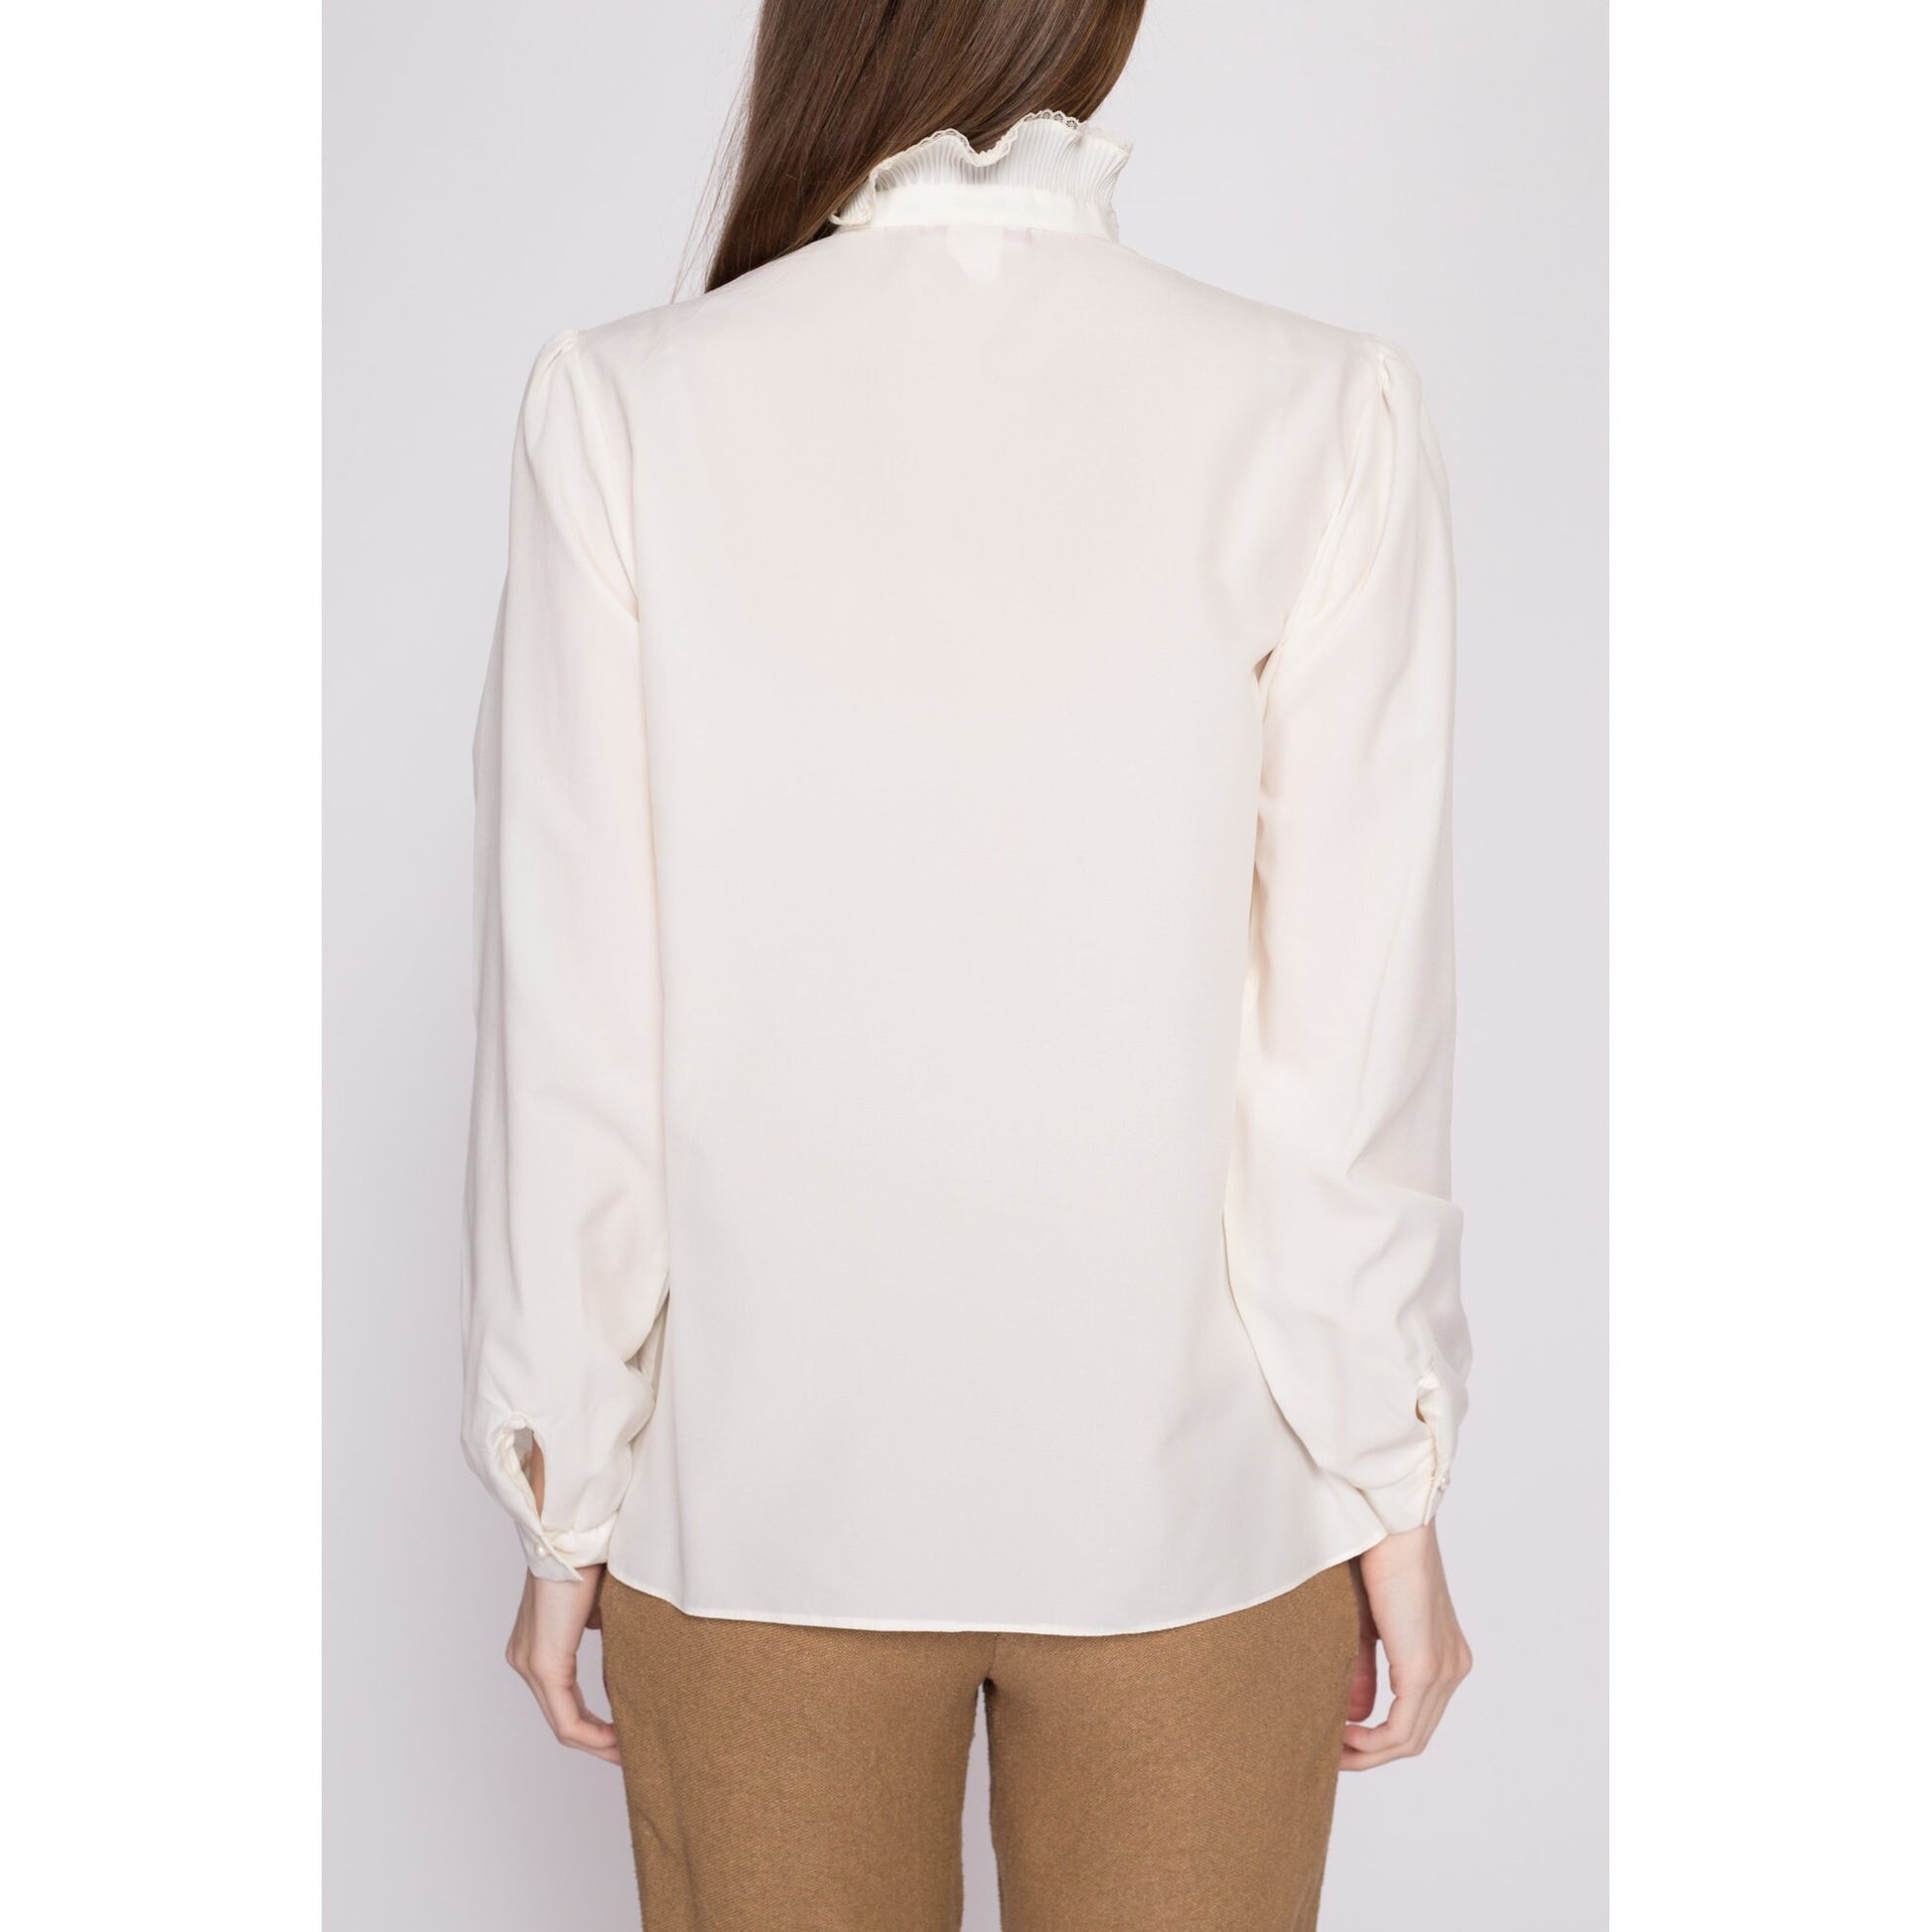 70s Sheer Tuxedo Ruffle Blouse - Large | Vintage Edwardian Boho White Long Sleeve Top